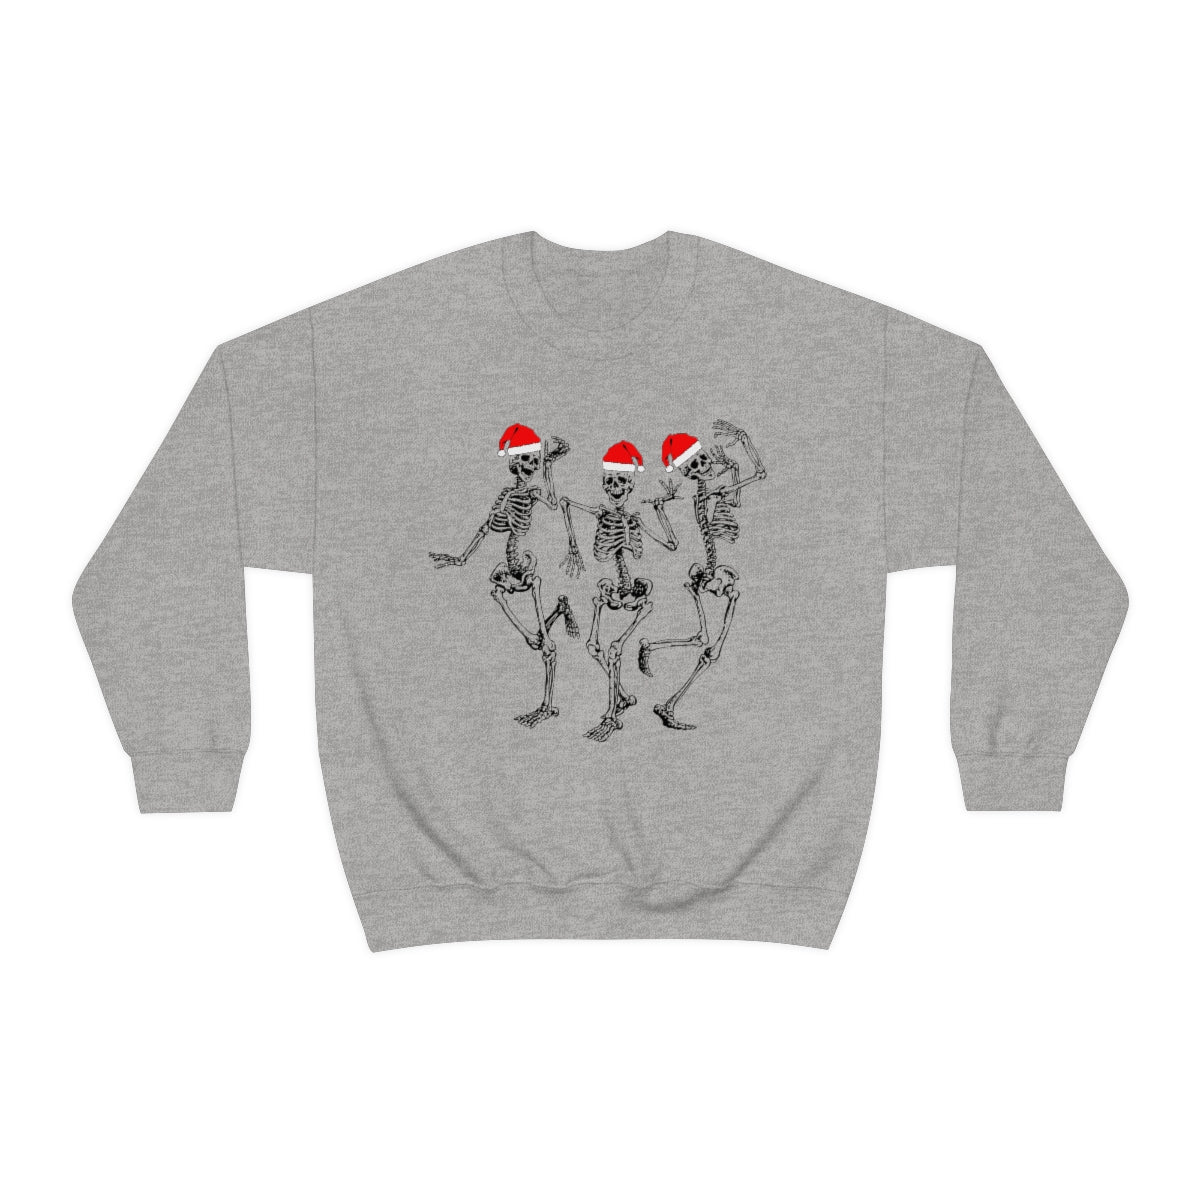 Dancing Skeleton Santas Unisex Sweatshirt